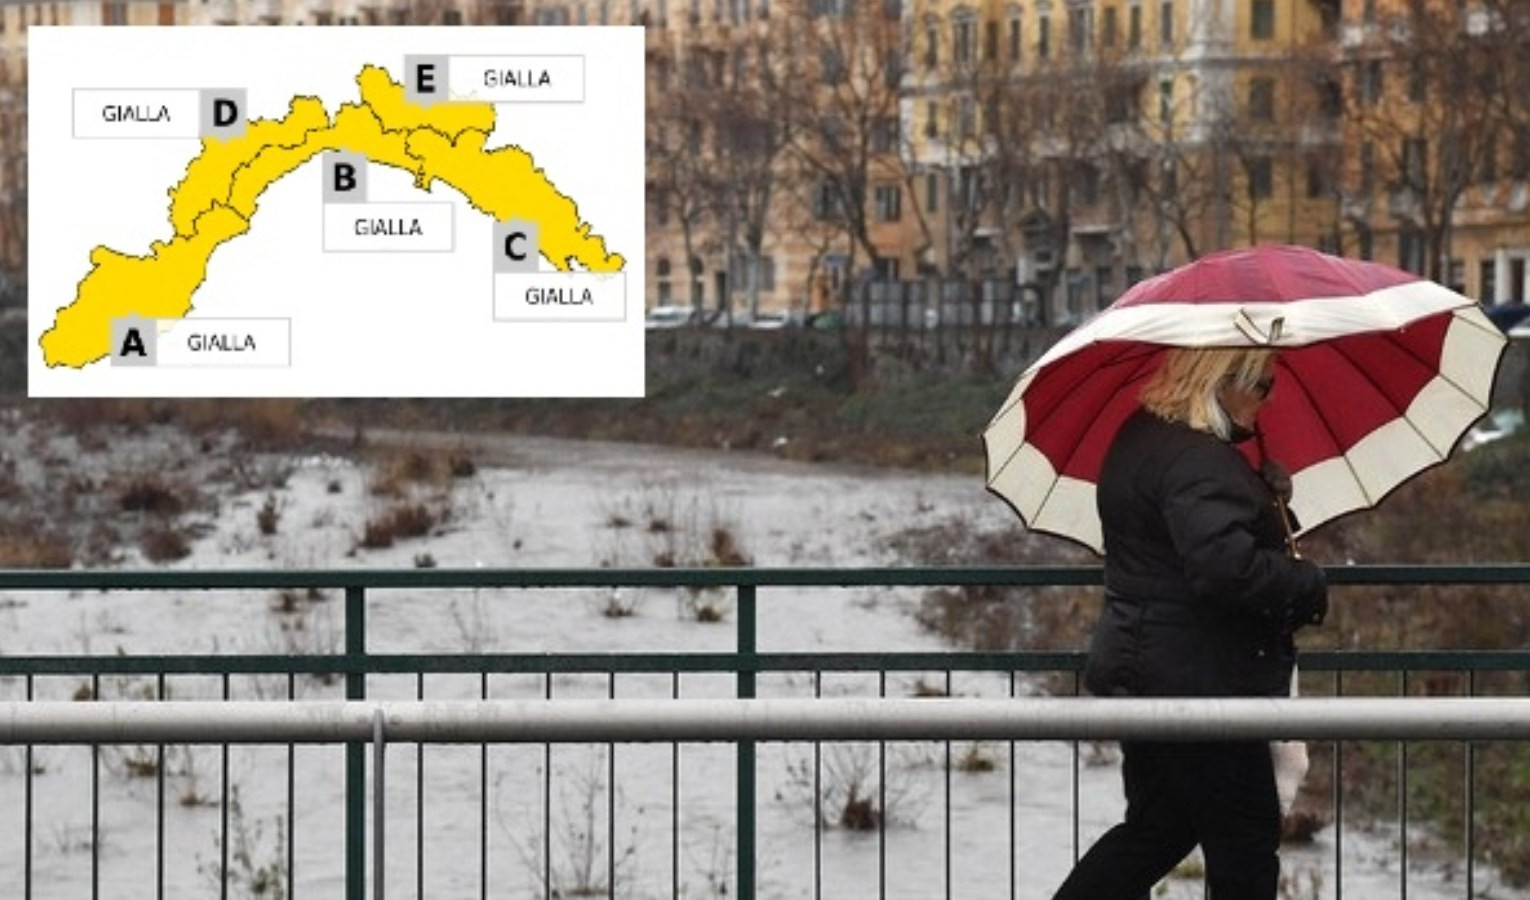 Torna la pioggia in Liguria, allerta meteo gialla su tutta la regione